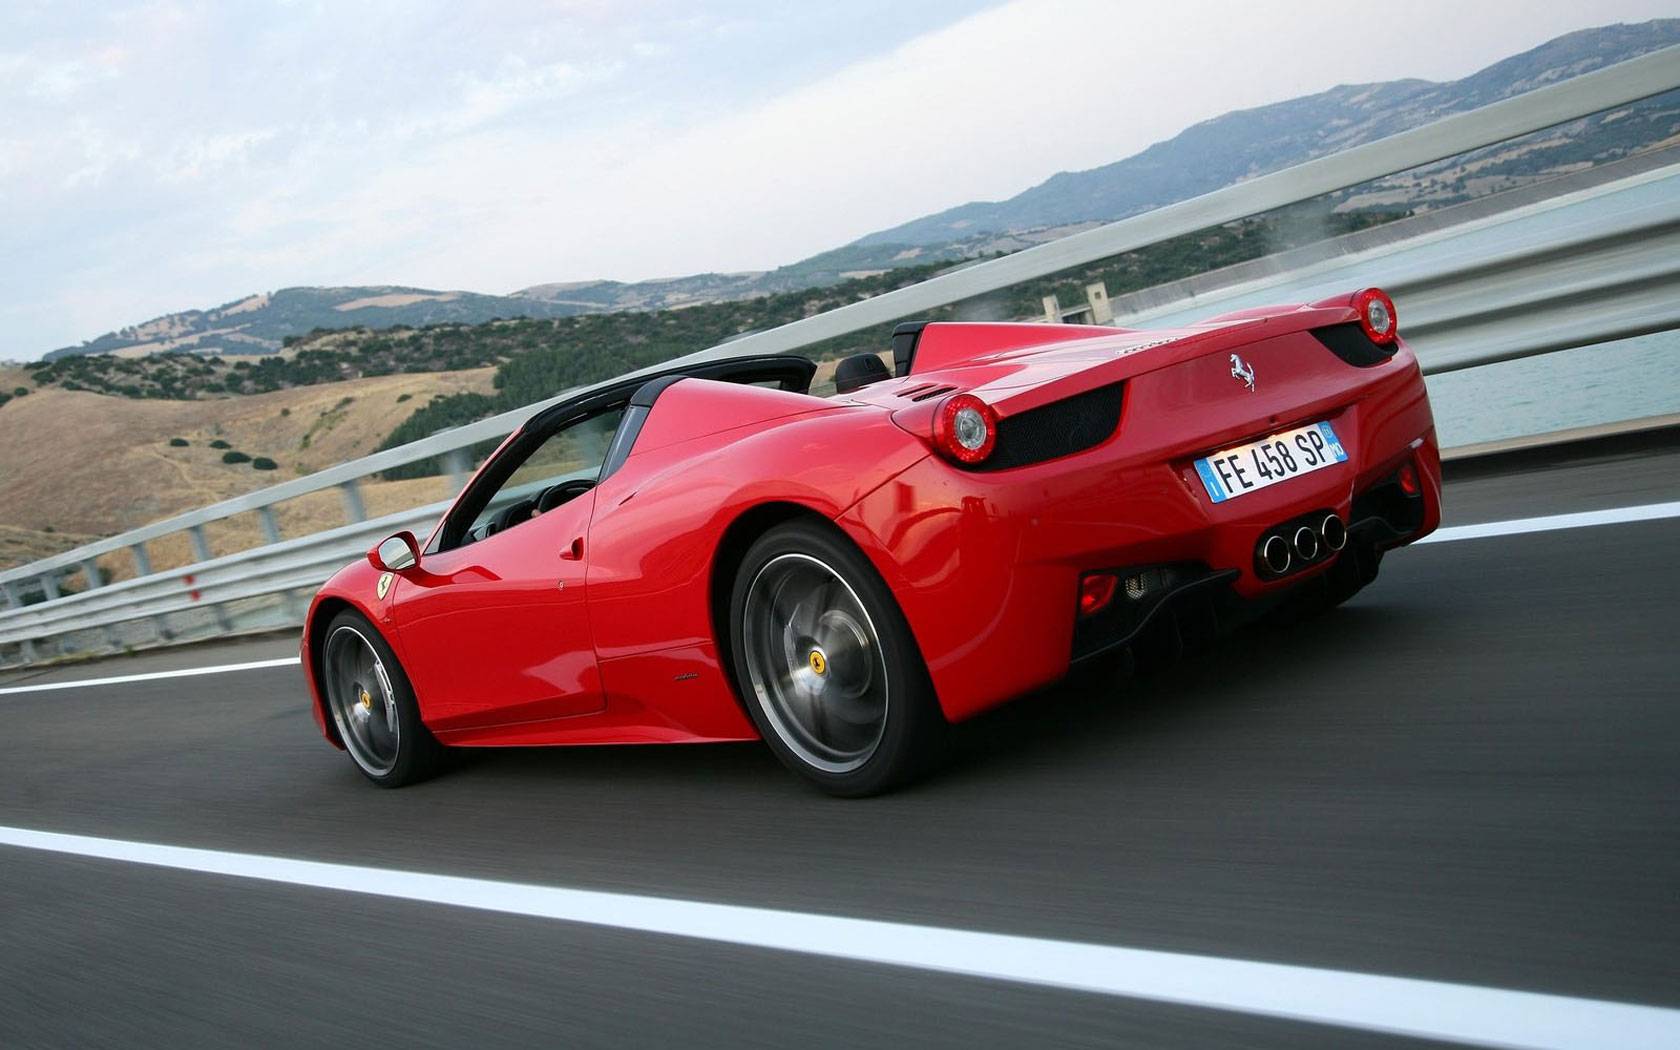 Ferrari 458 italia итальянский суперкар за $272 000